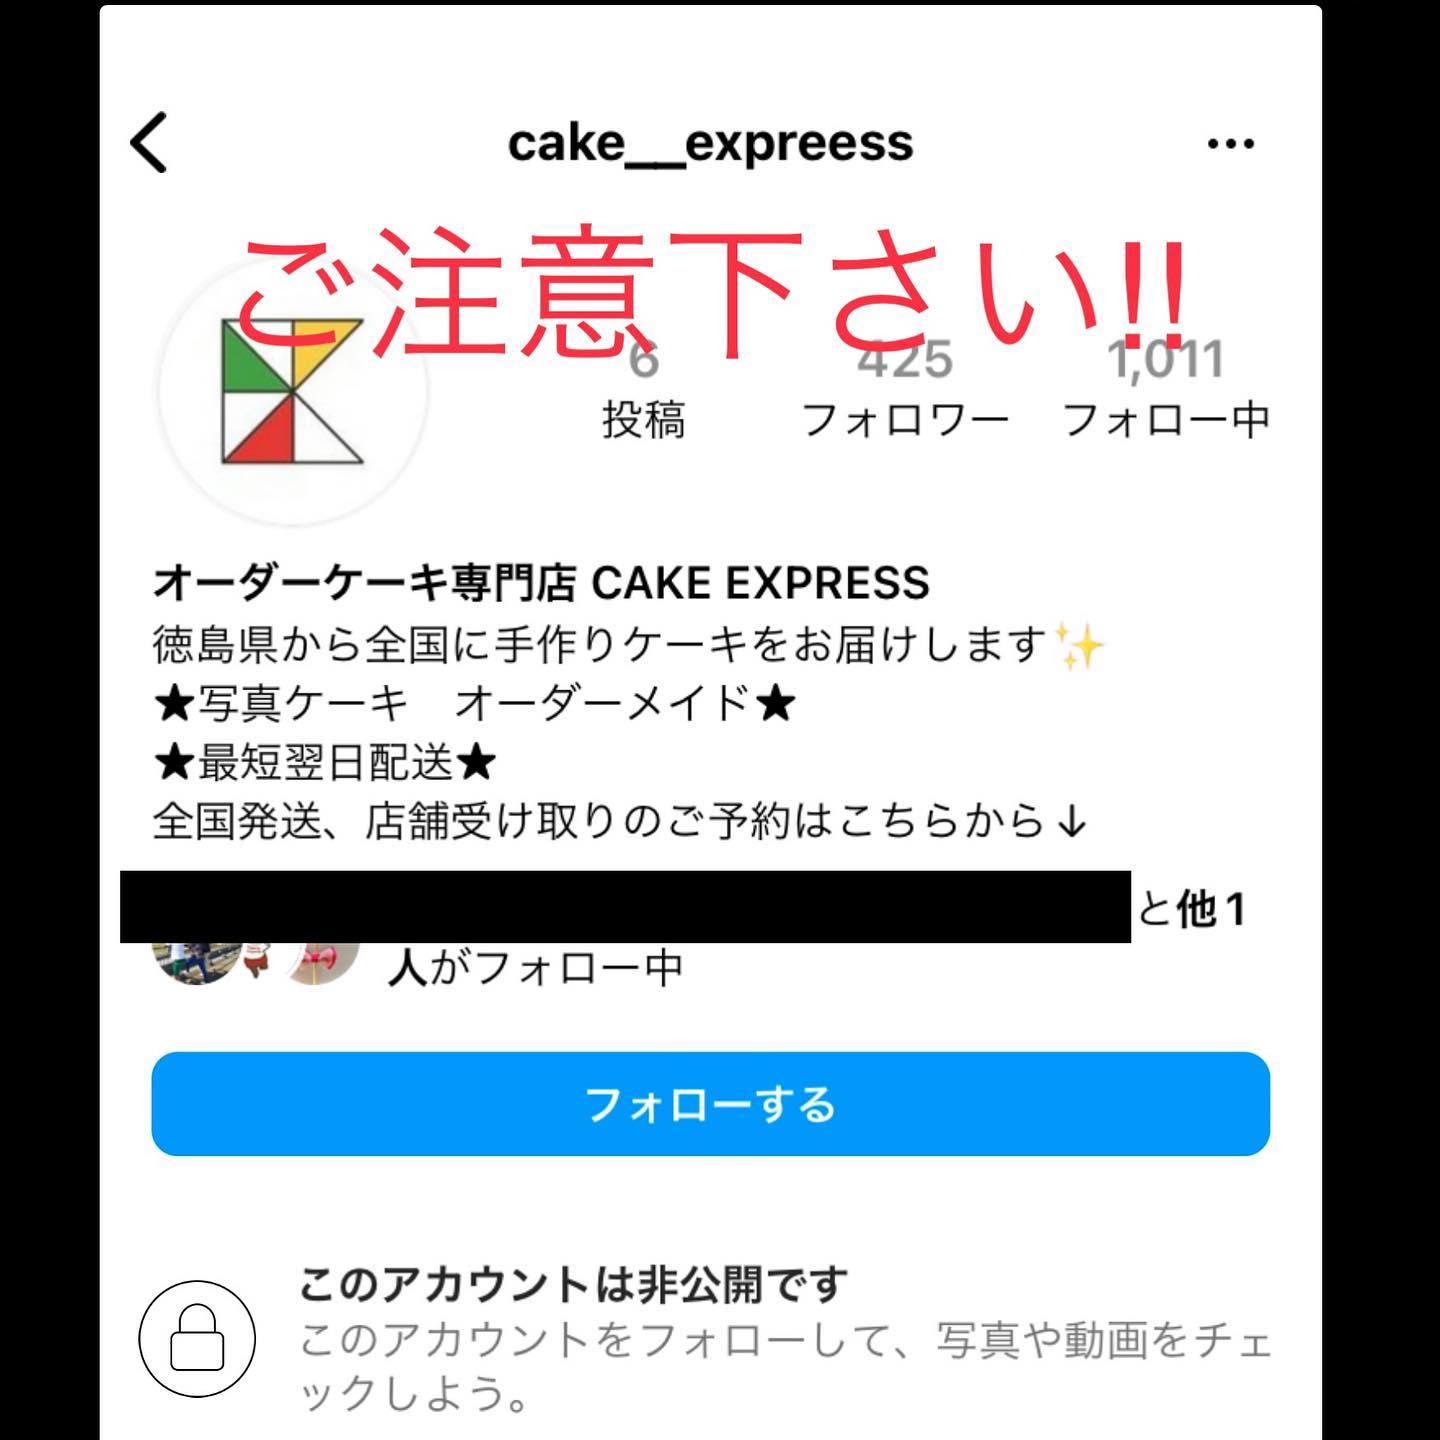 ※【重要】アカウント名「cake_expreess」ご注意下さい！！※ from Instagram